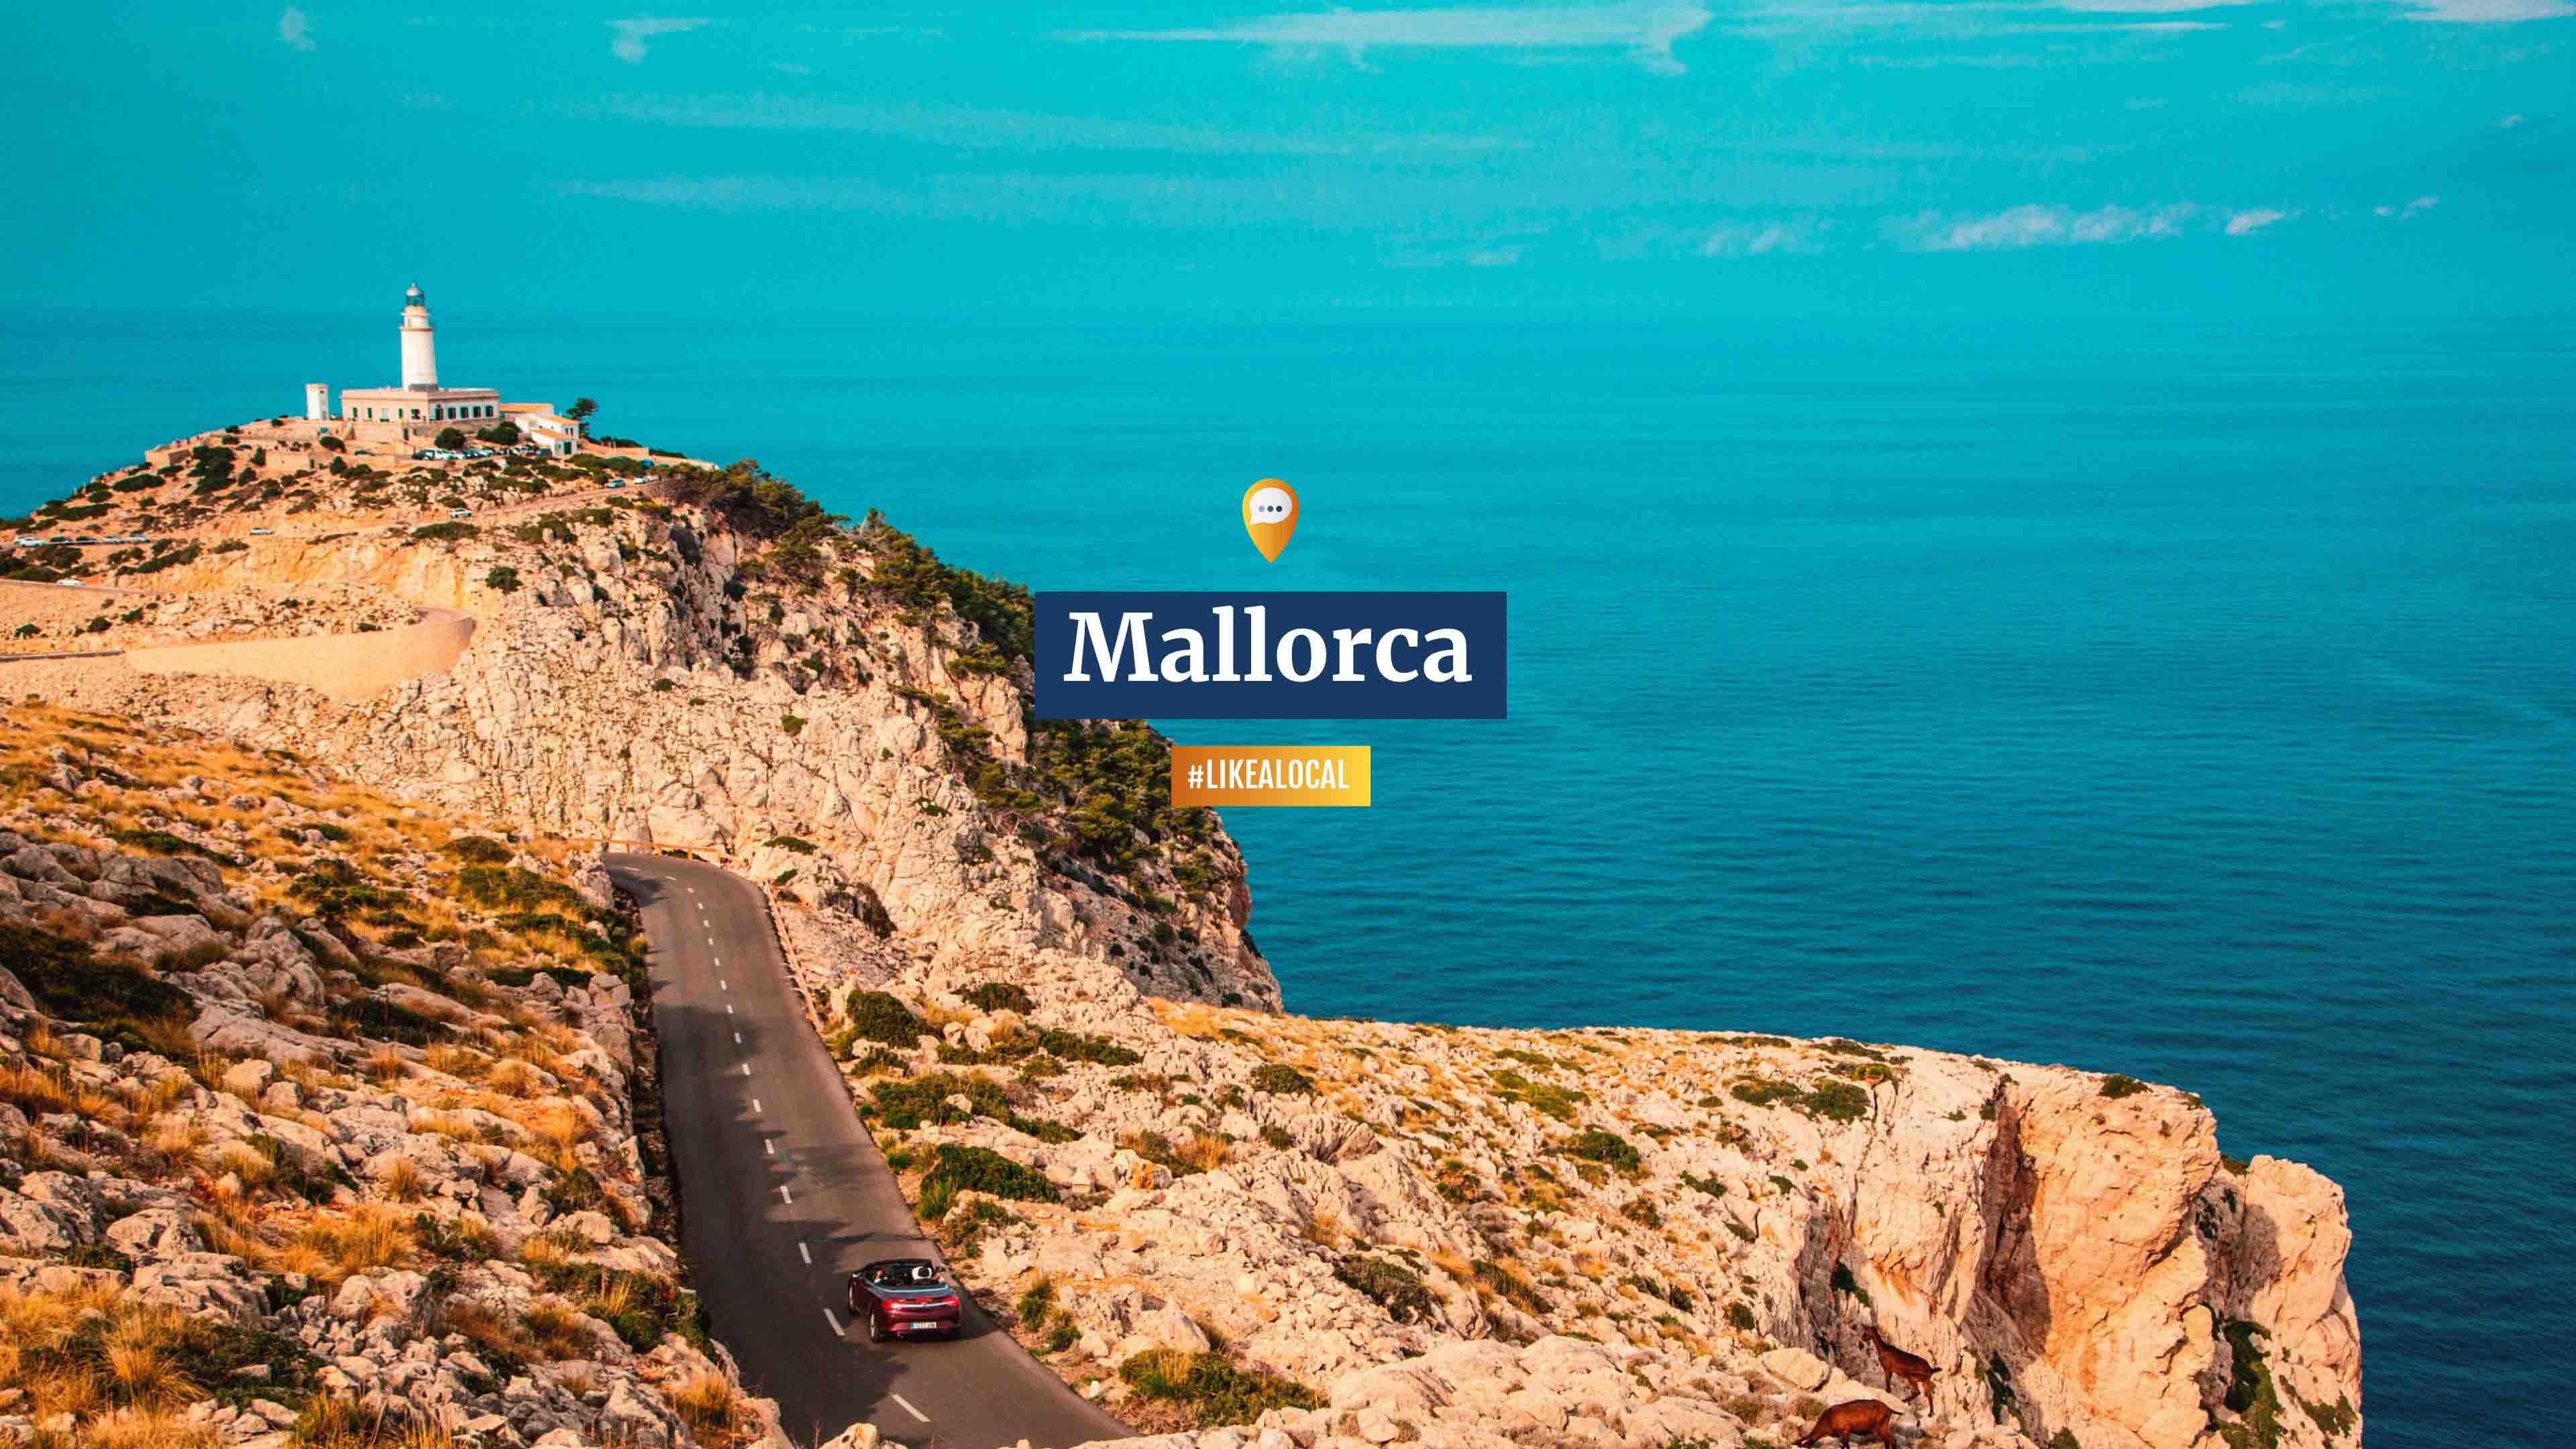 Cabrio auf Straße an felsiger Steilküste mit Leuchtturm, Text "Mallorca, #likealocal"